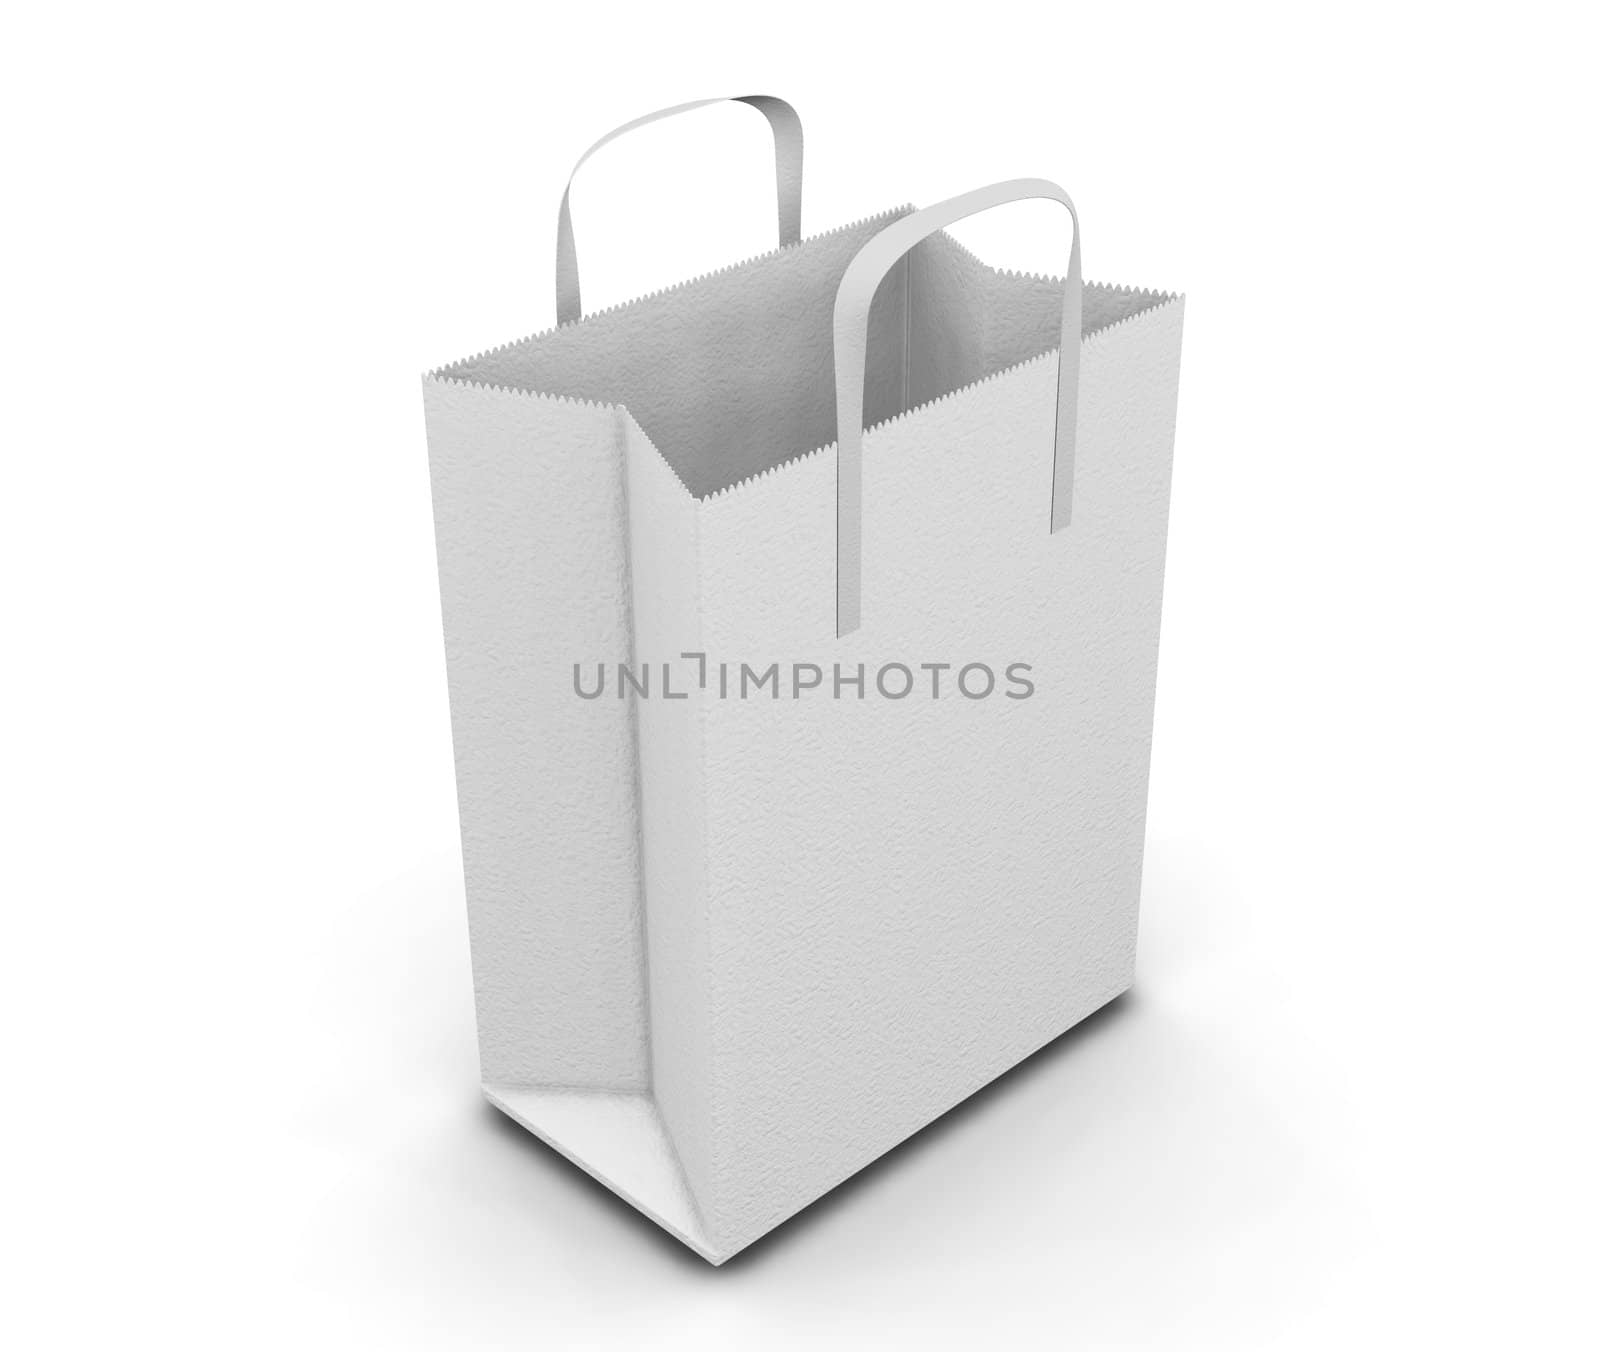 3D render of a shopping bag